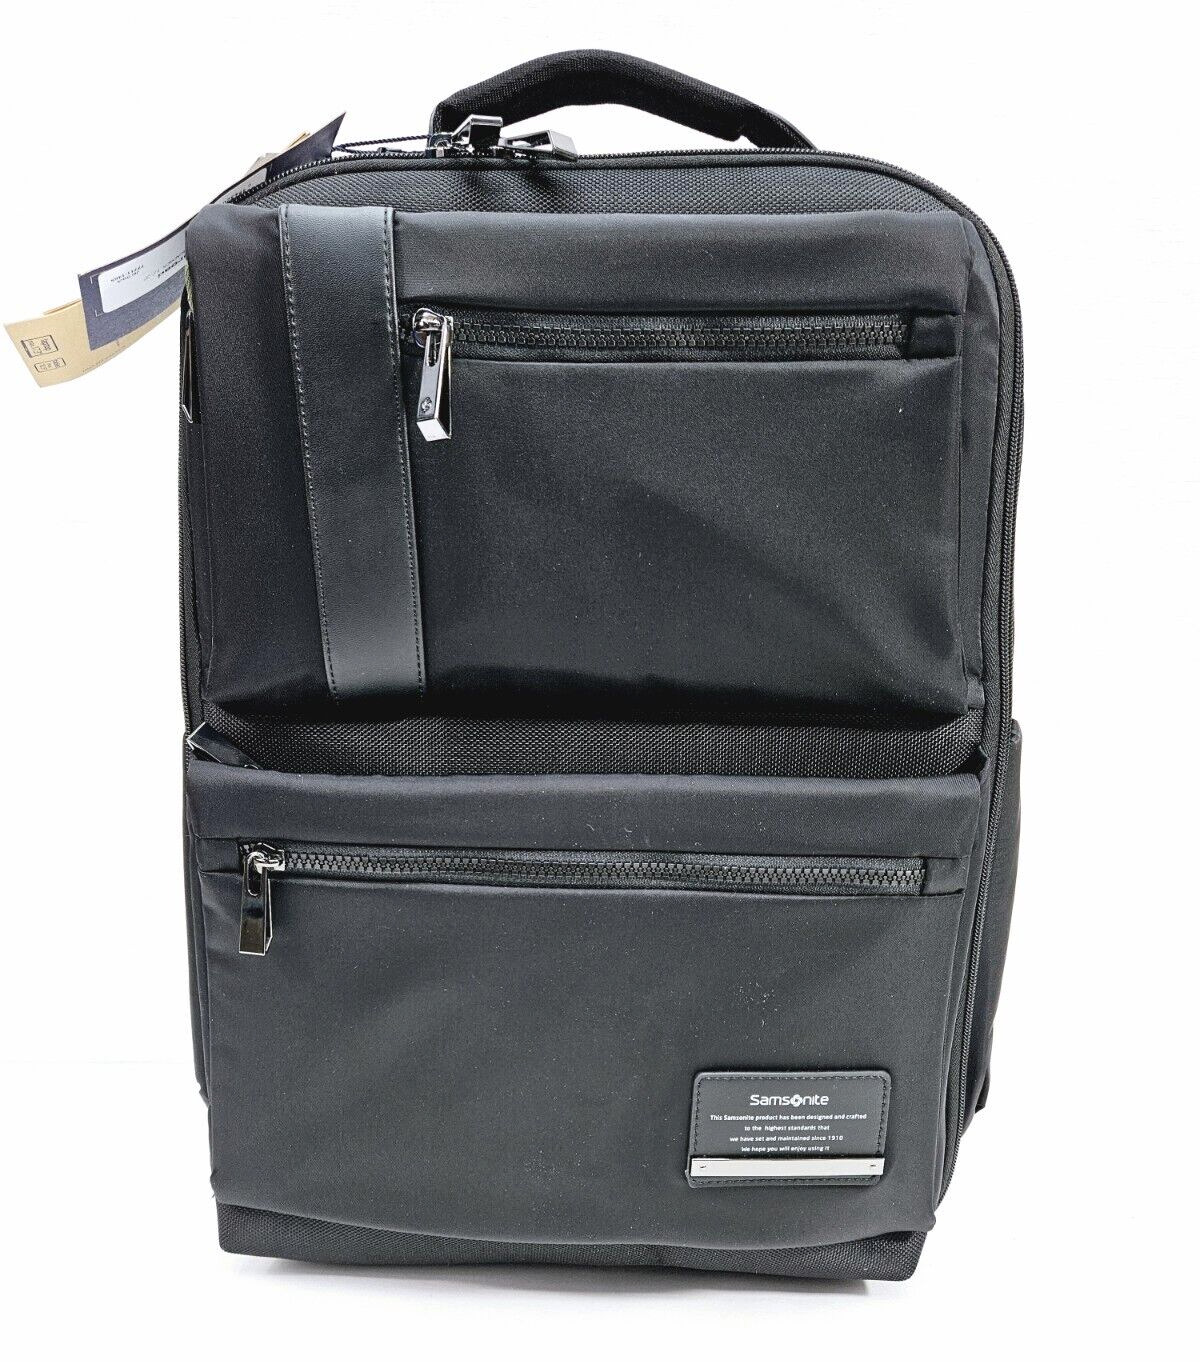 Samsonite OpenRoad Laptop Business Backpack, Jet Black, 17.3-Inch